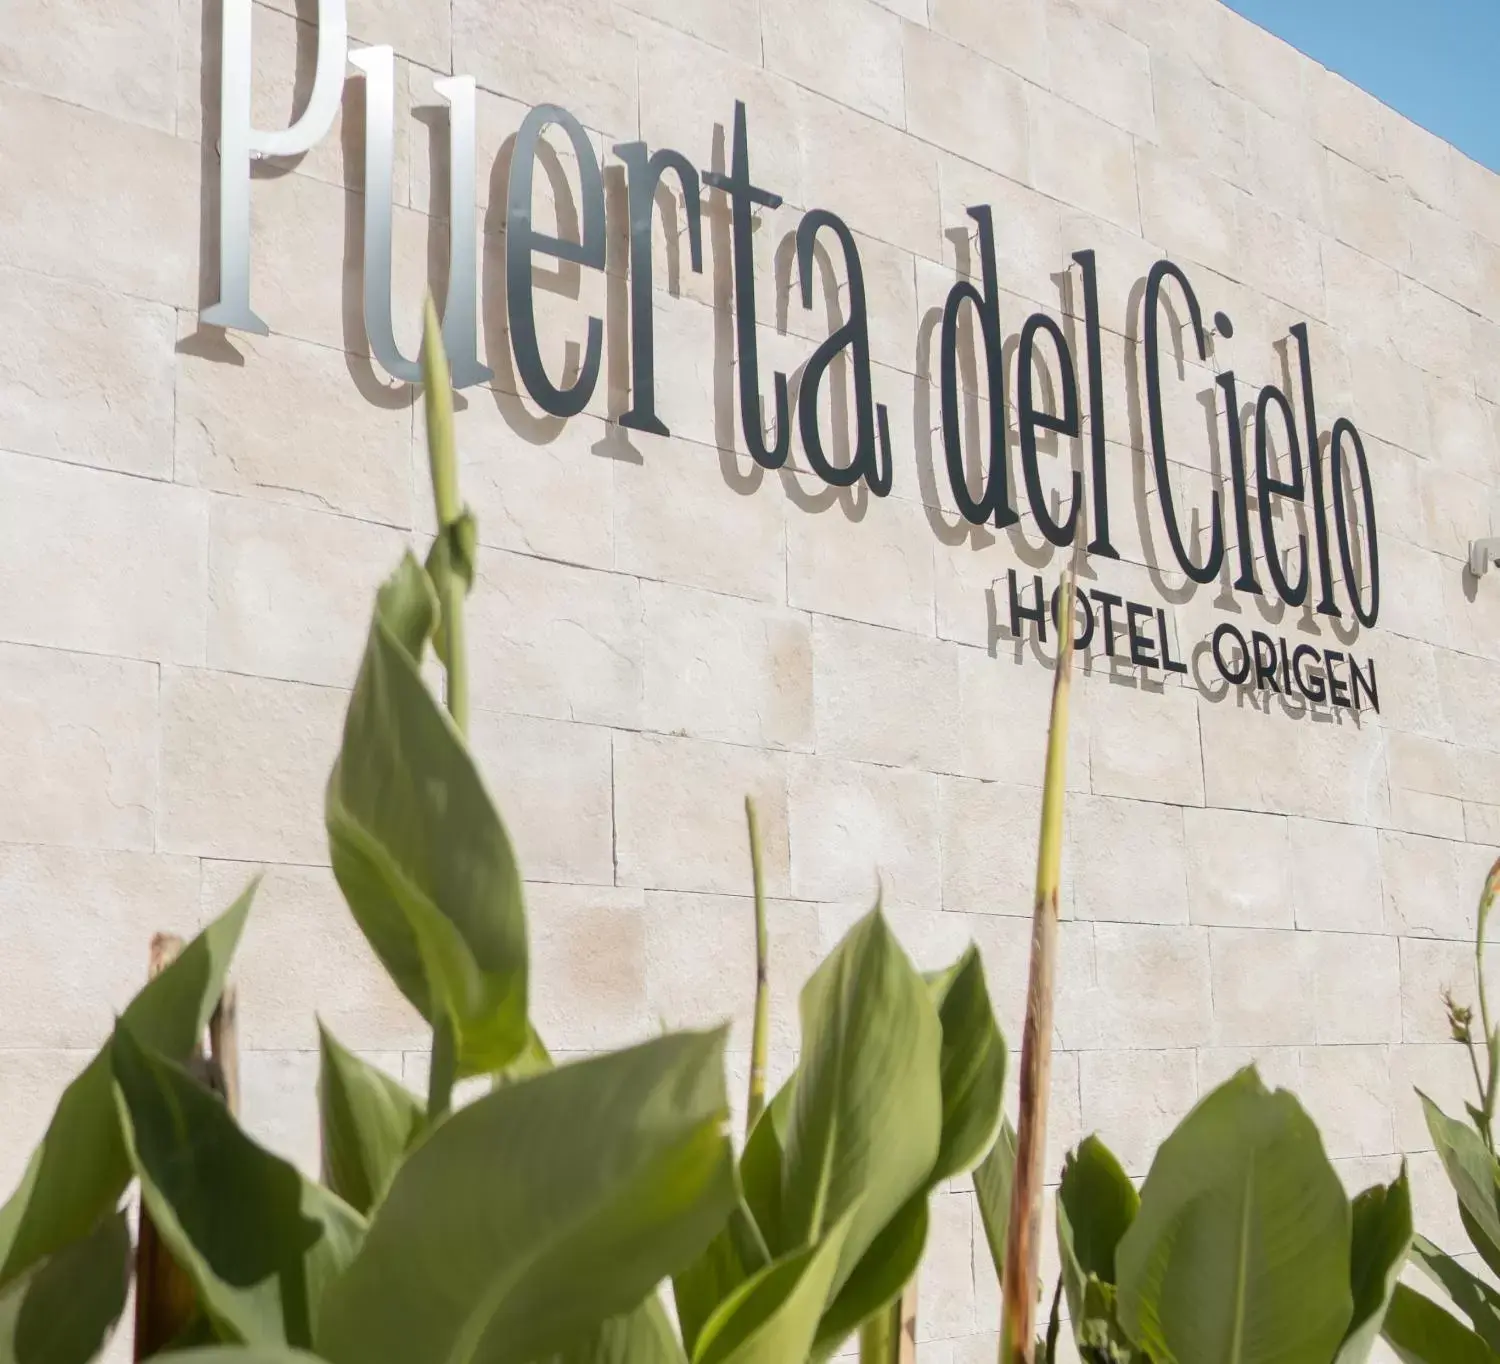 Facade/entrance, Property Logo/Sign in Puerta del Cielo Hotel Origen